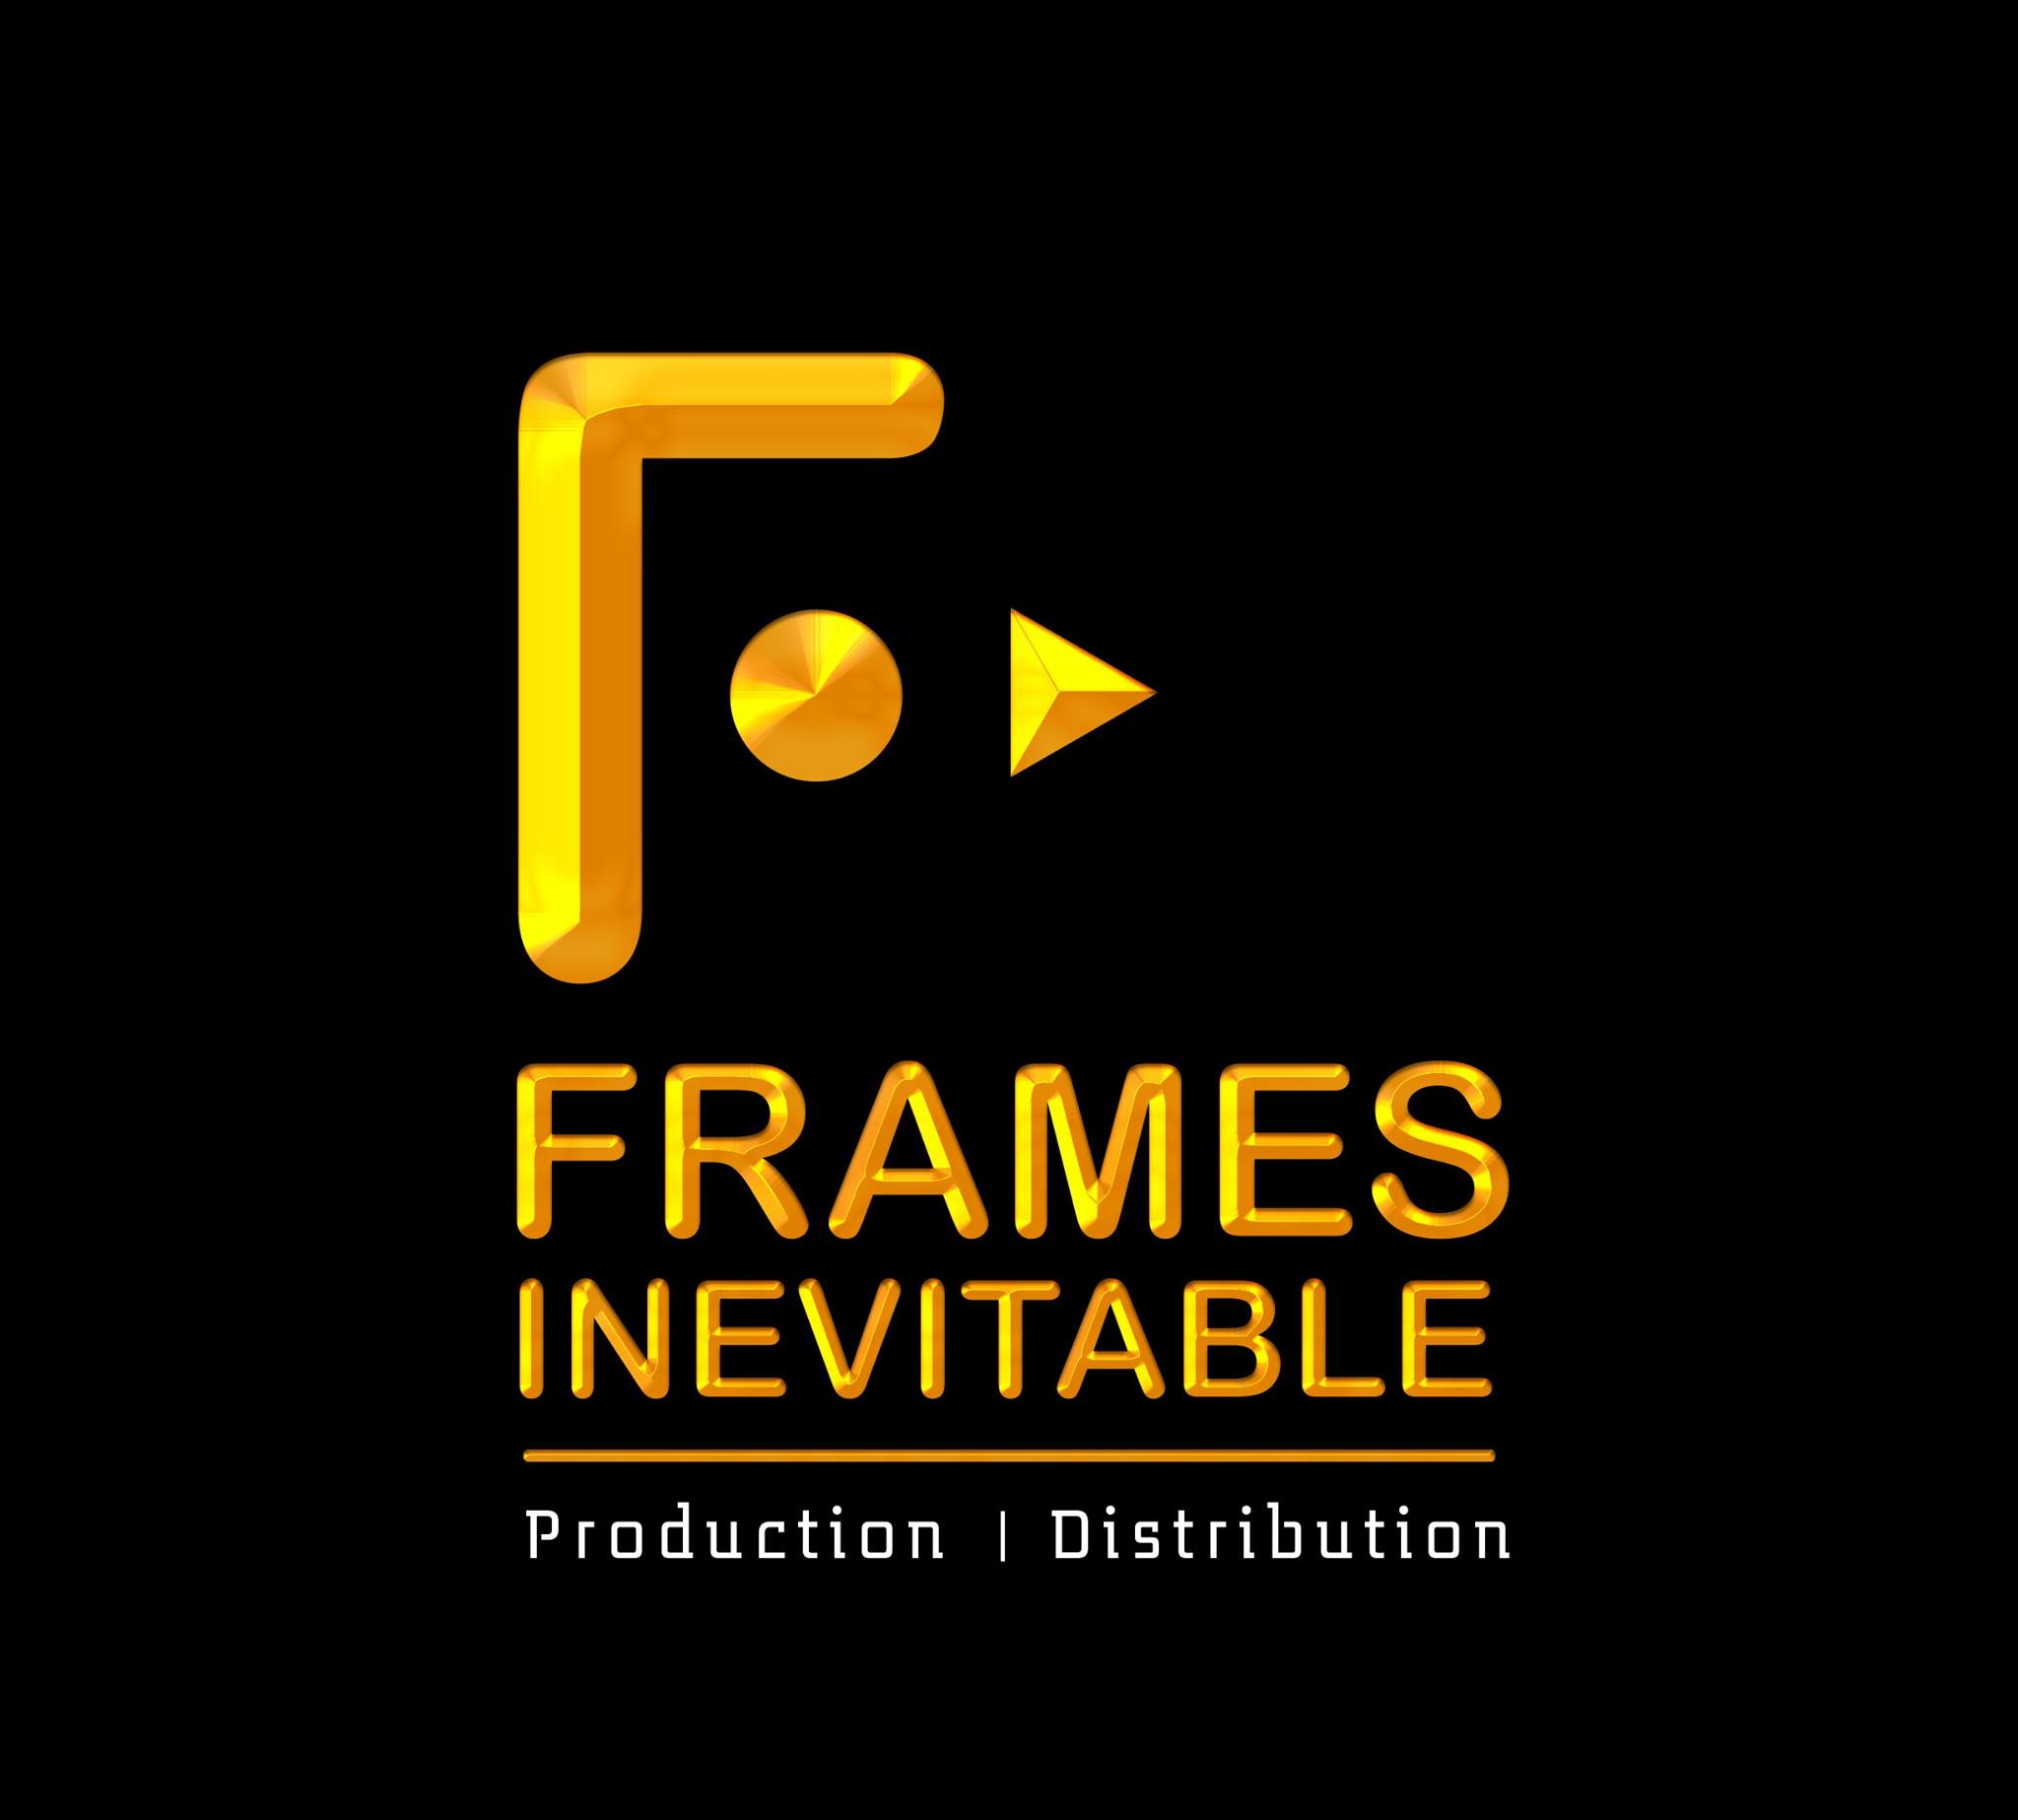 Frames Inevitable